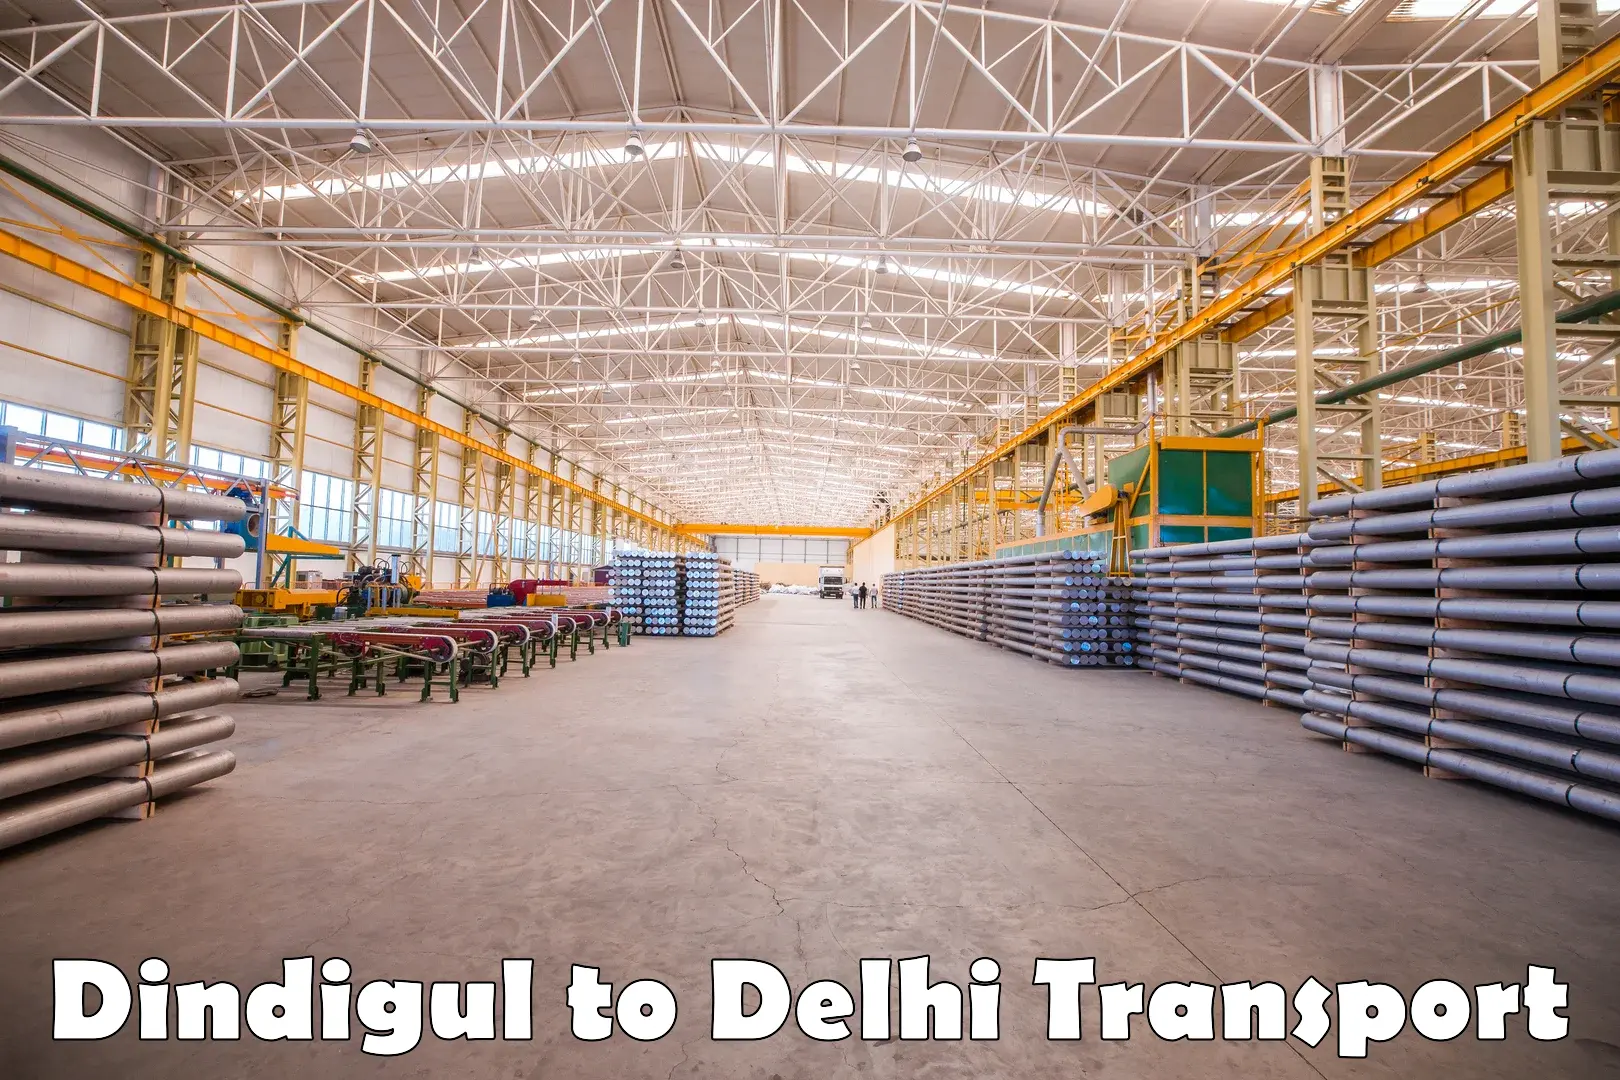 Daily parcel service transport Dindigul to Sarojini Nagar